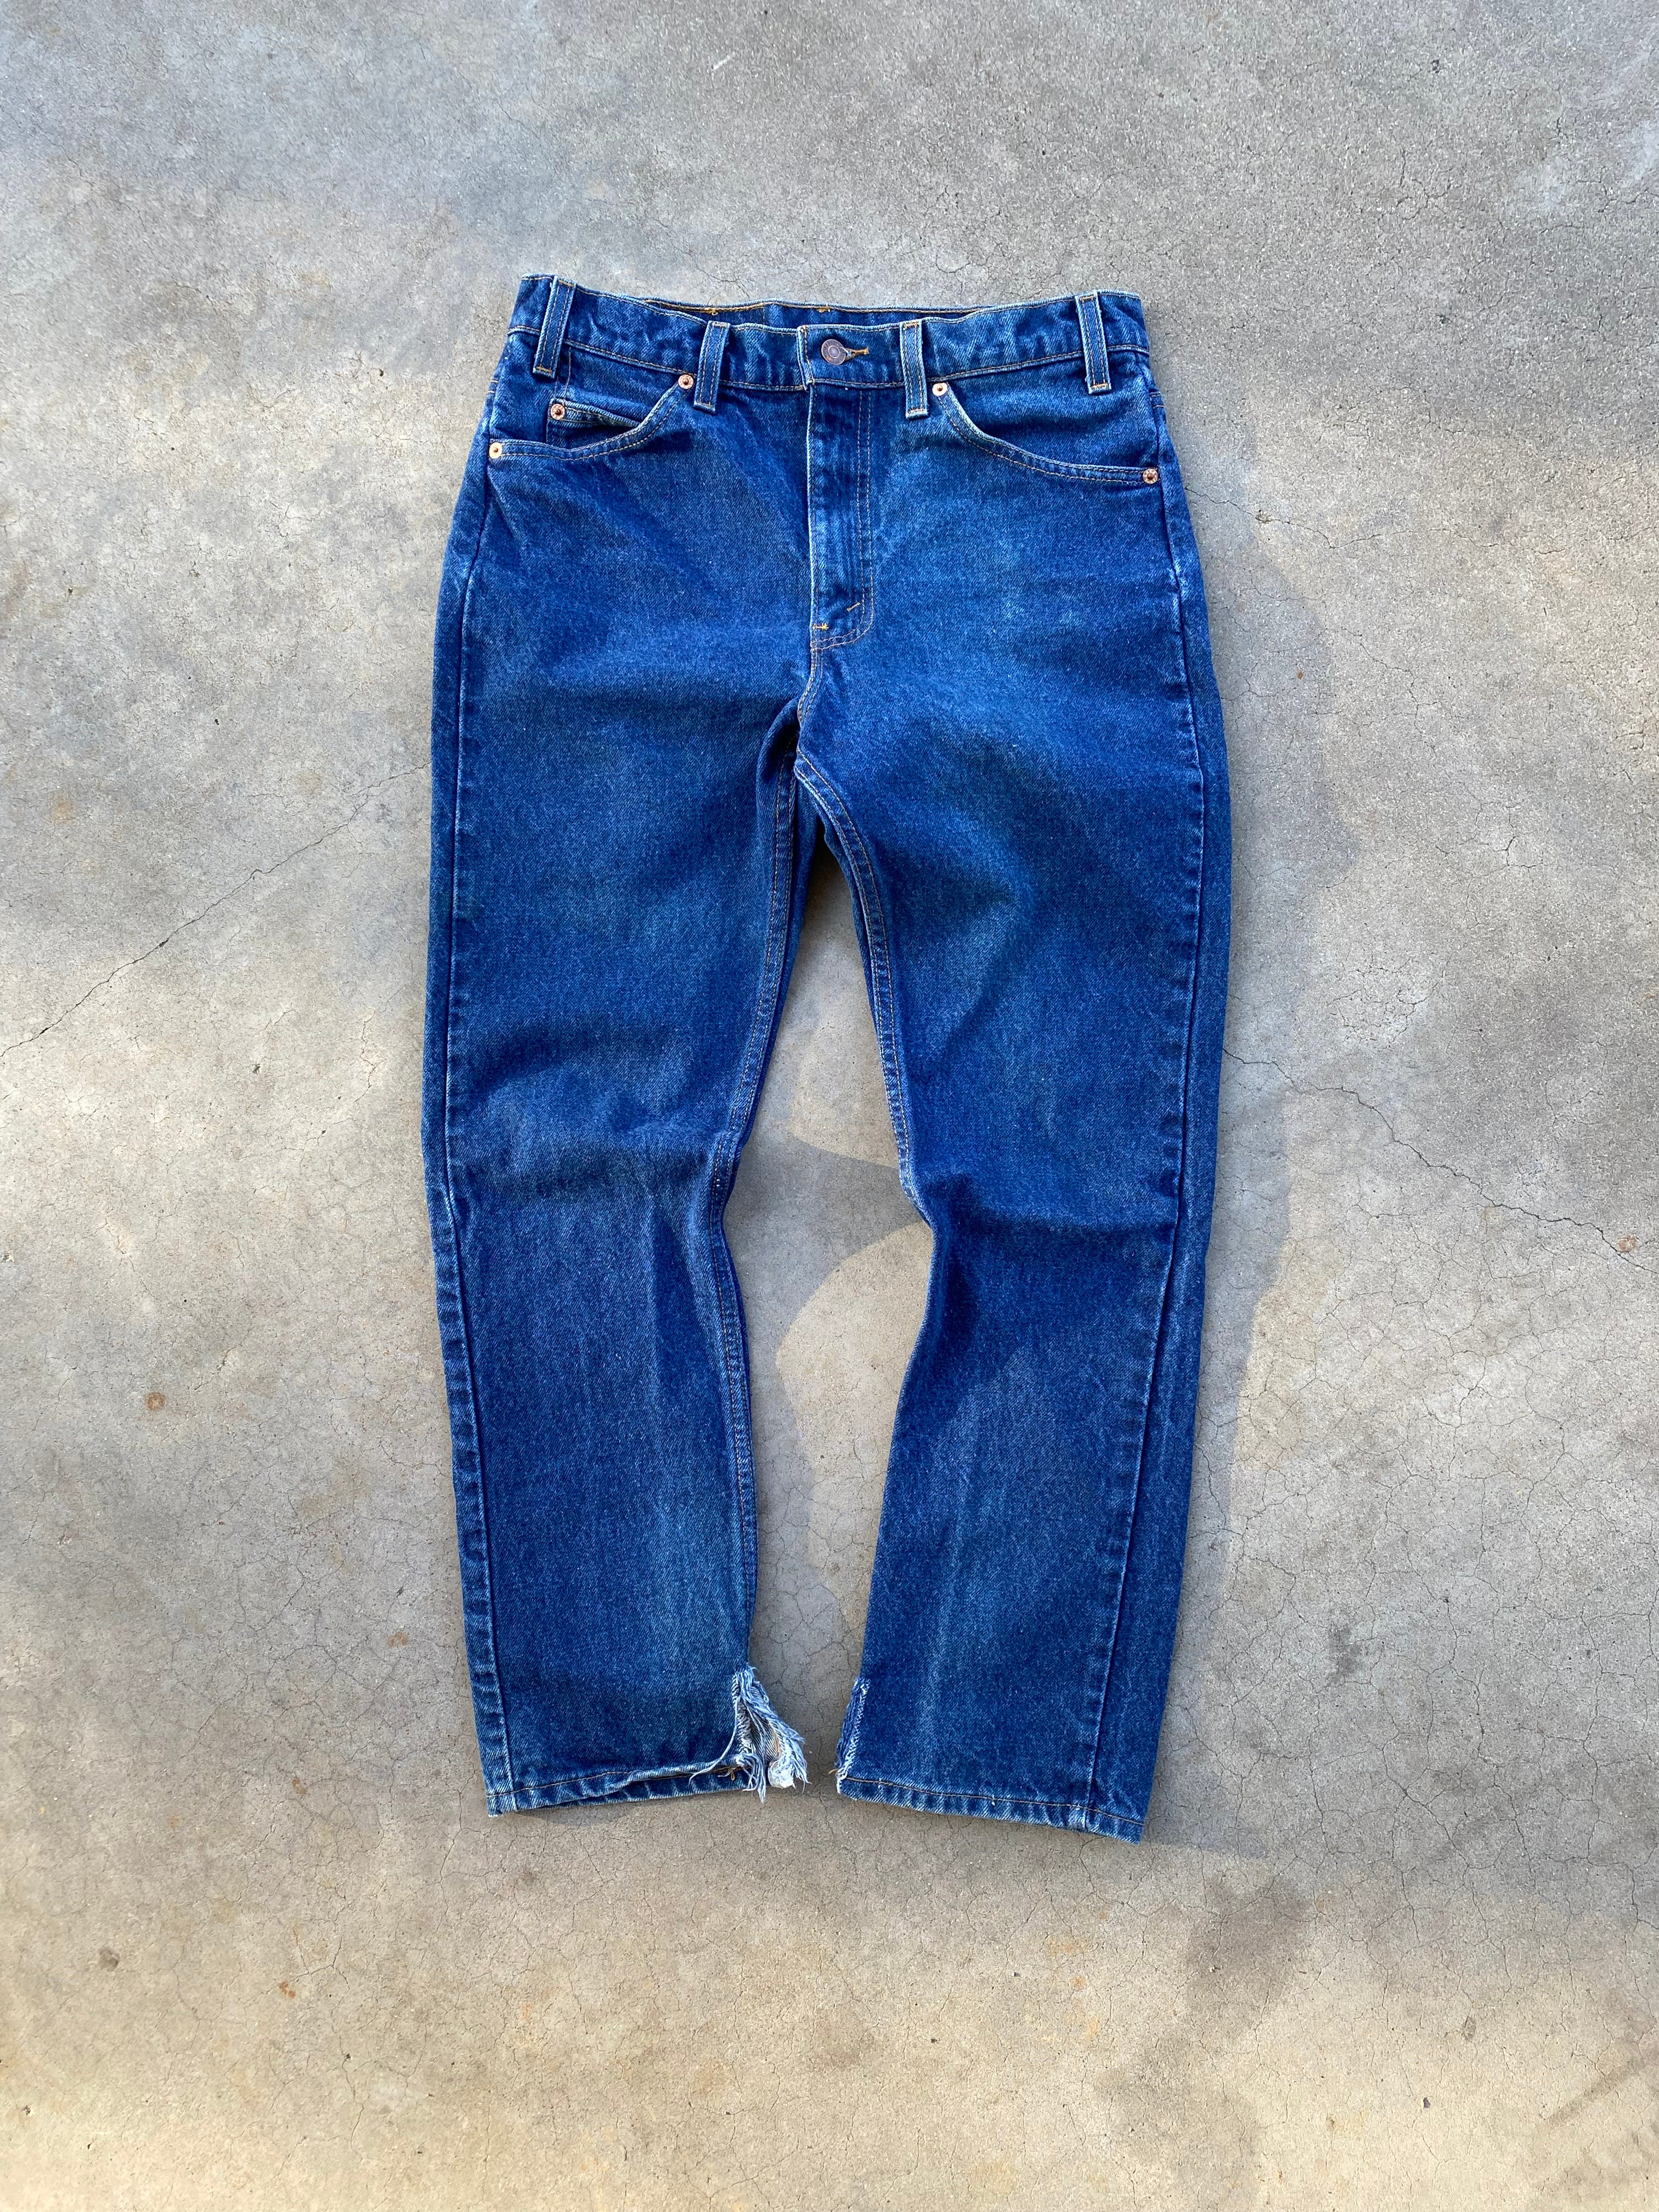 1996 Levi’s 505 Jeans (32"x28.5")